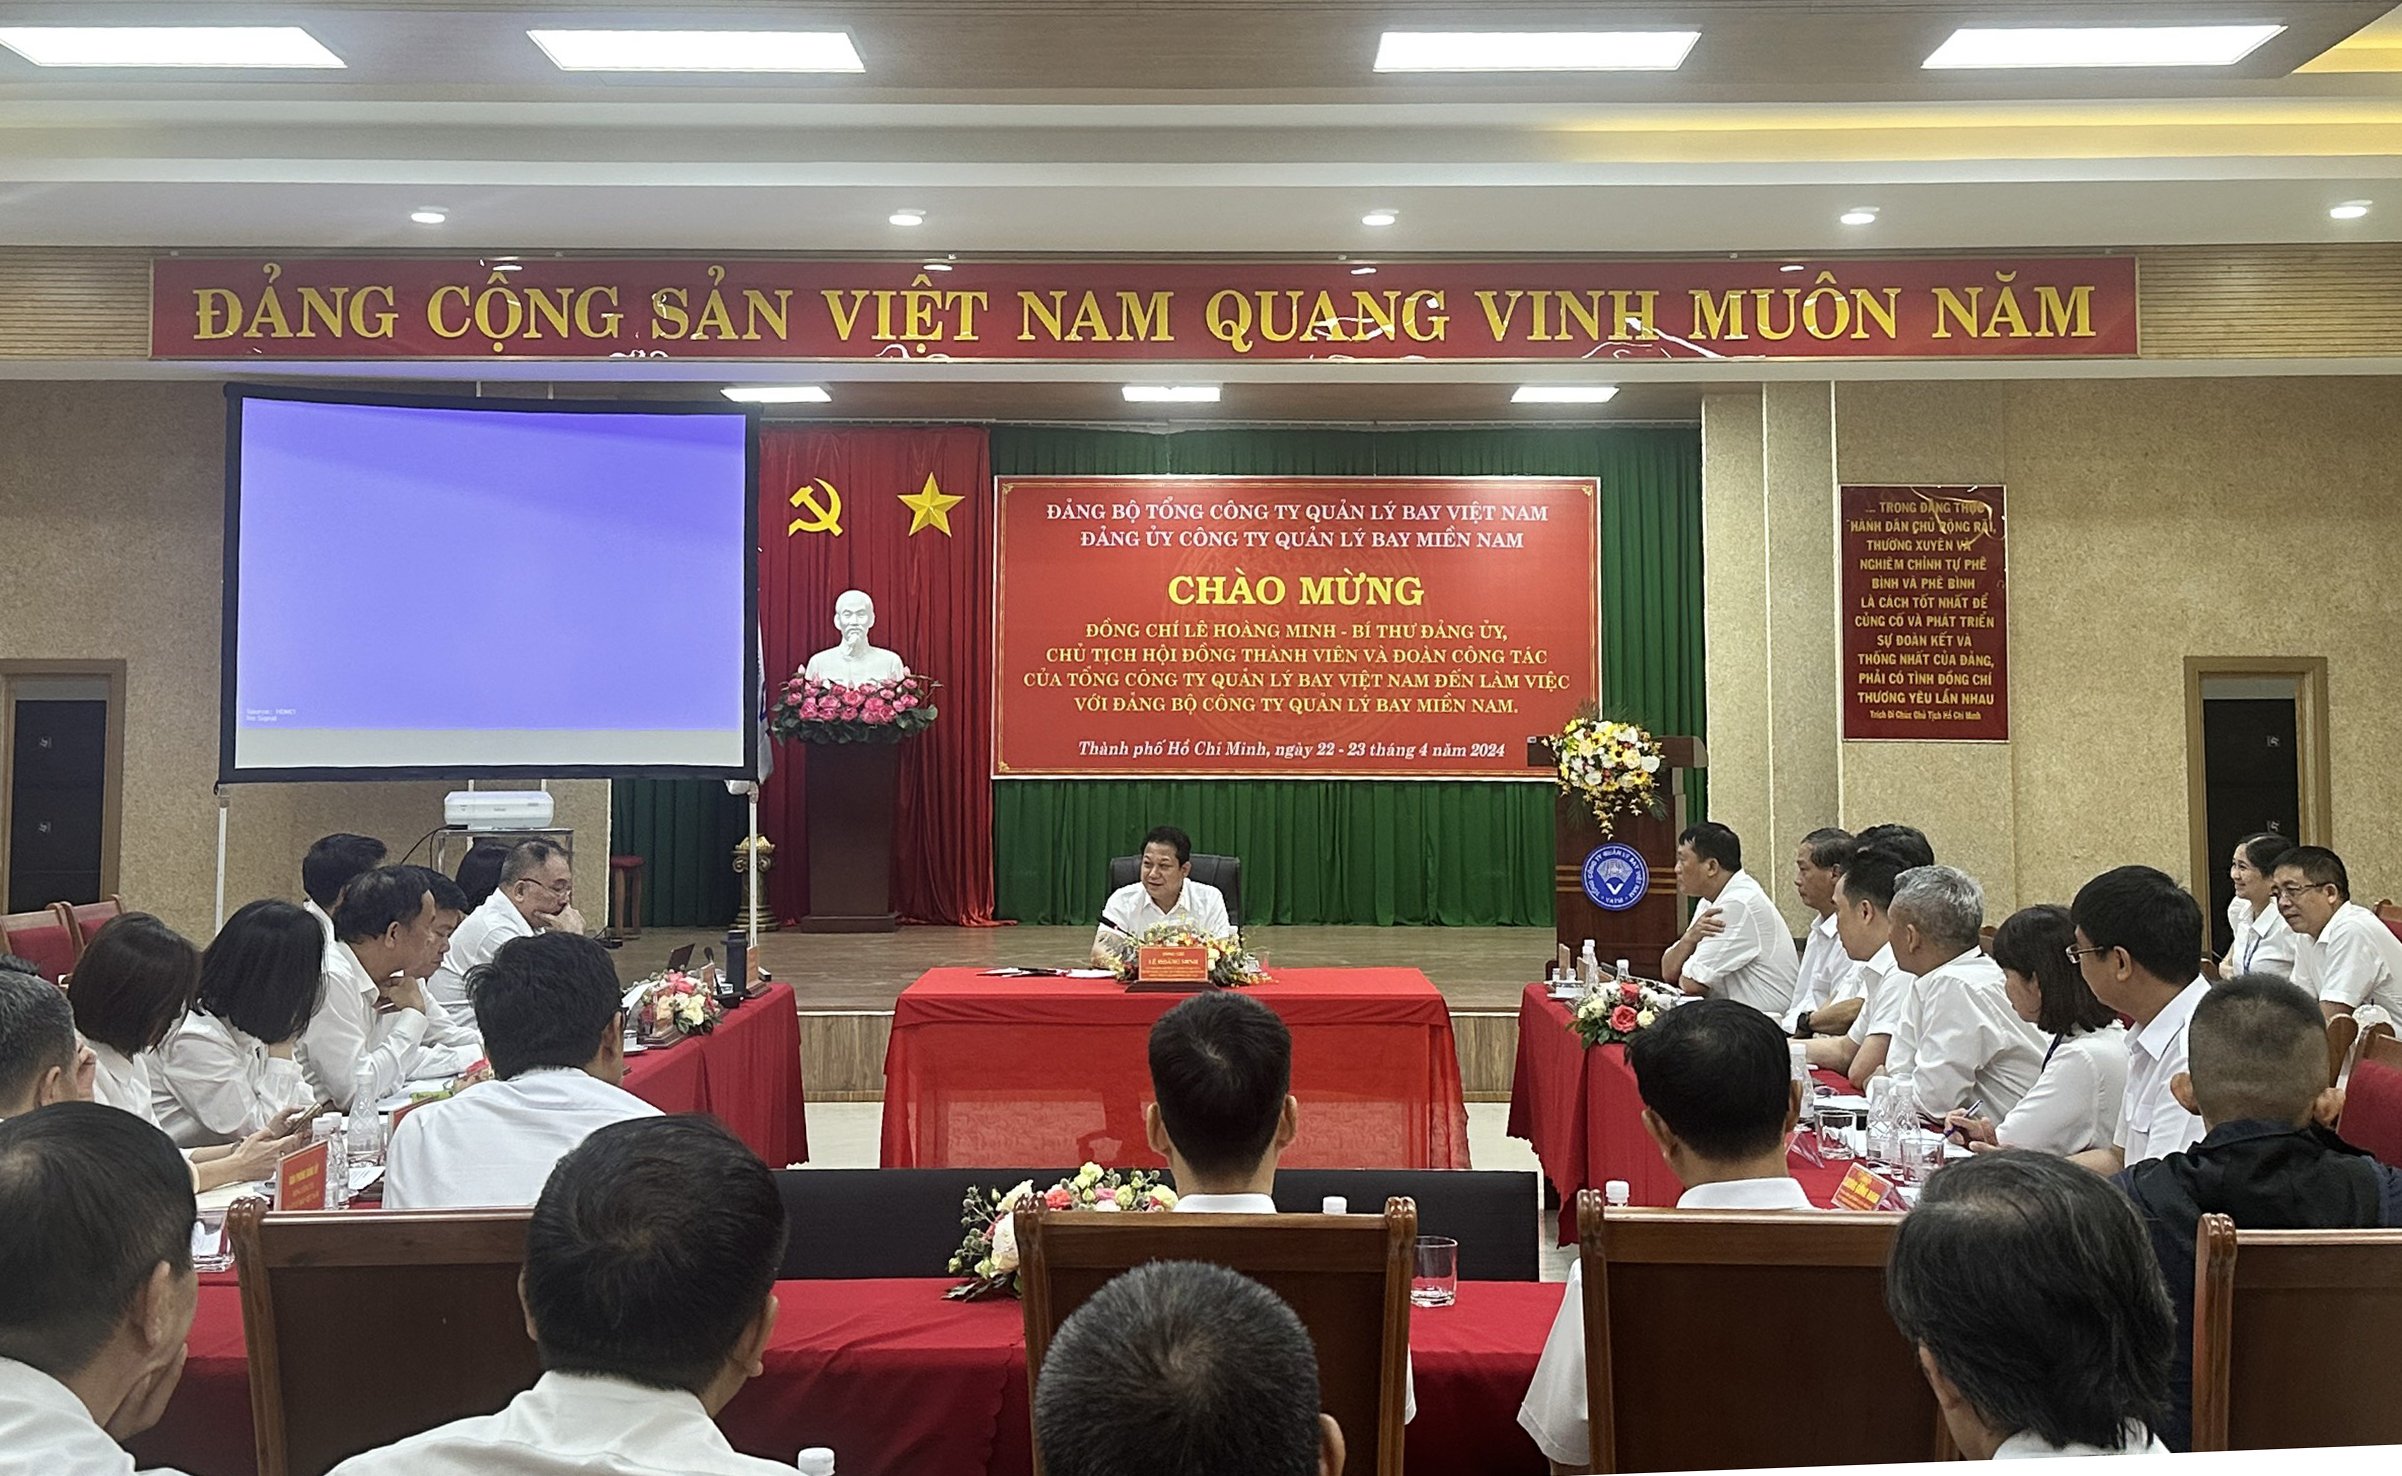 Bí thư Đảng uỷ Lê Hoàng Minh thăm và làm việc tại Đảng bộ Công ty Quản lý bay miền Nam